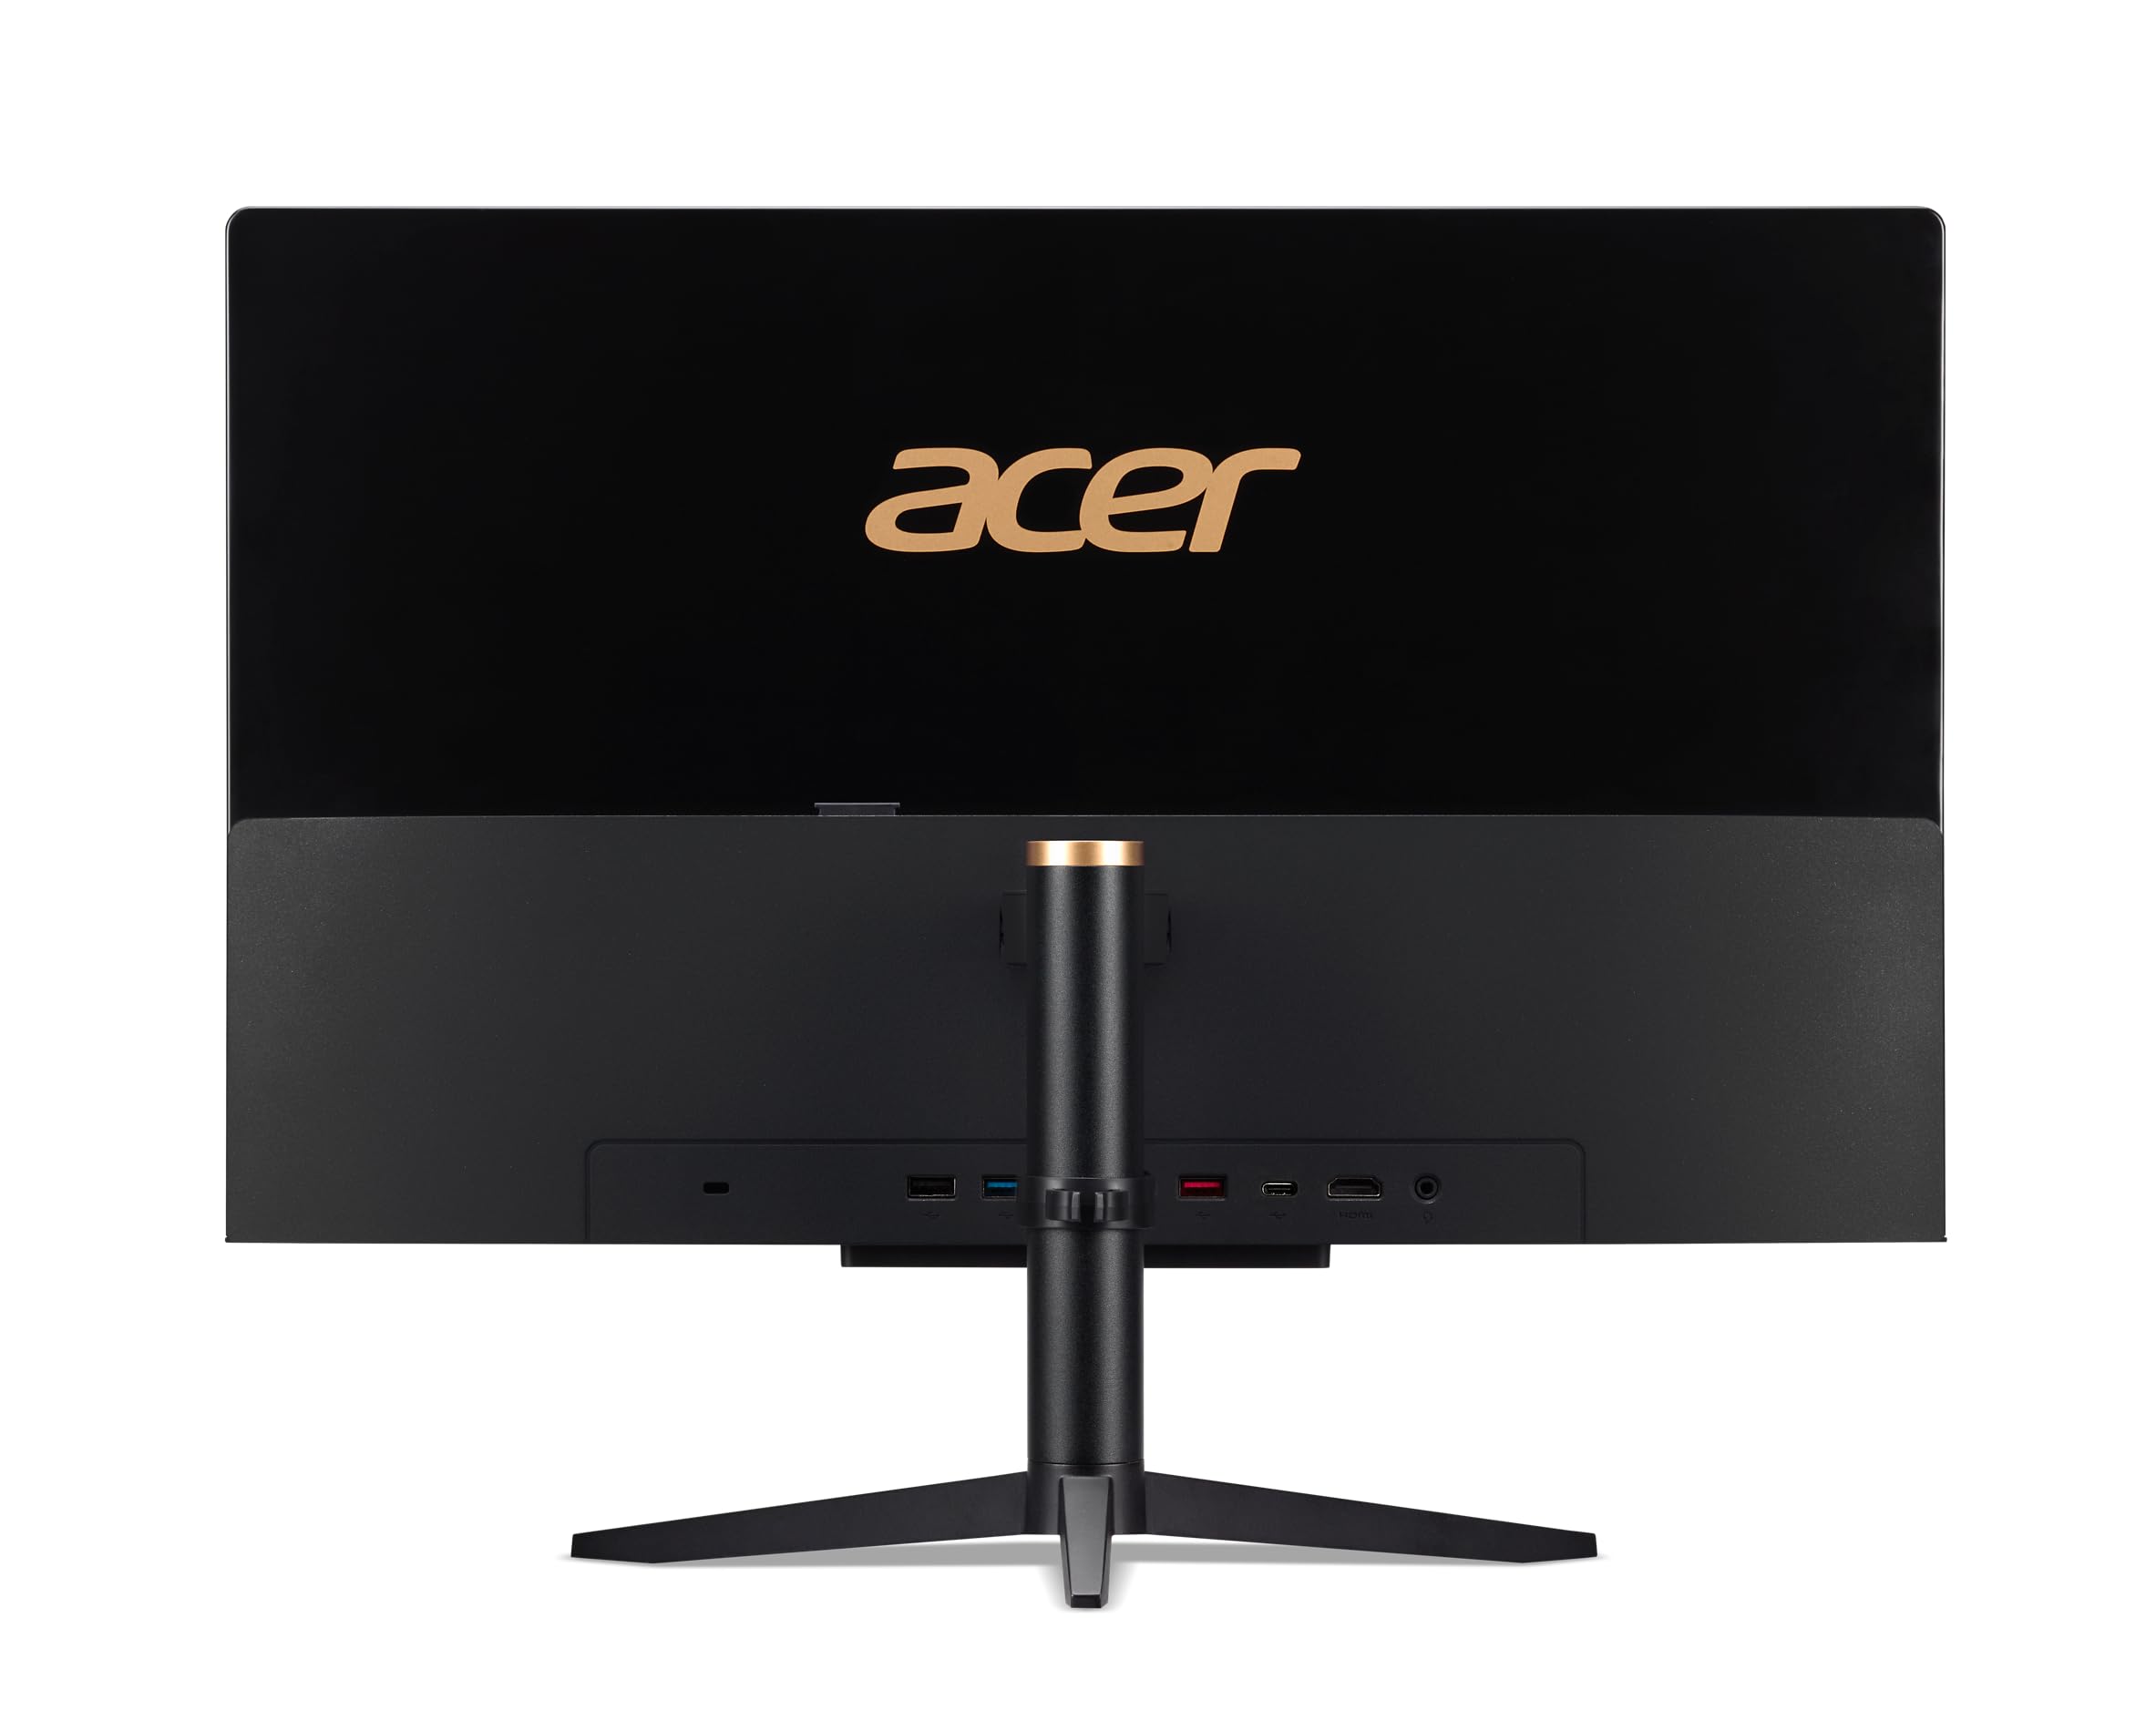 Acer Aspire C22-1610-UA91 AIO Desktop | 21.5